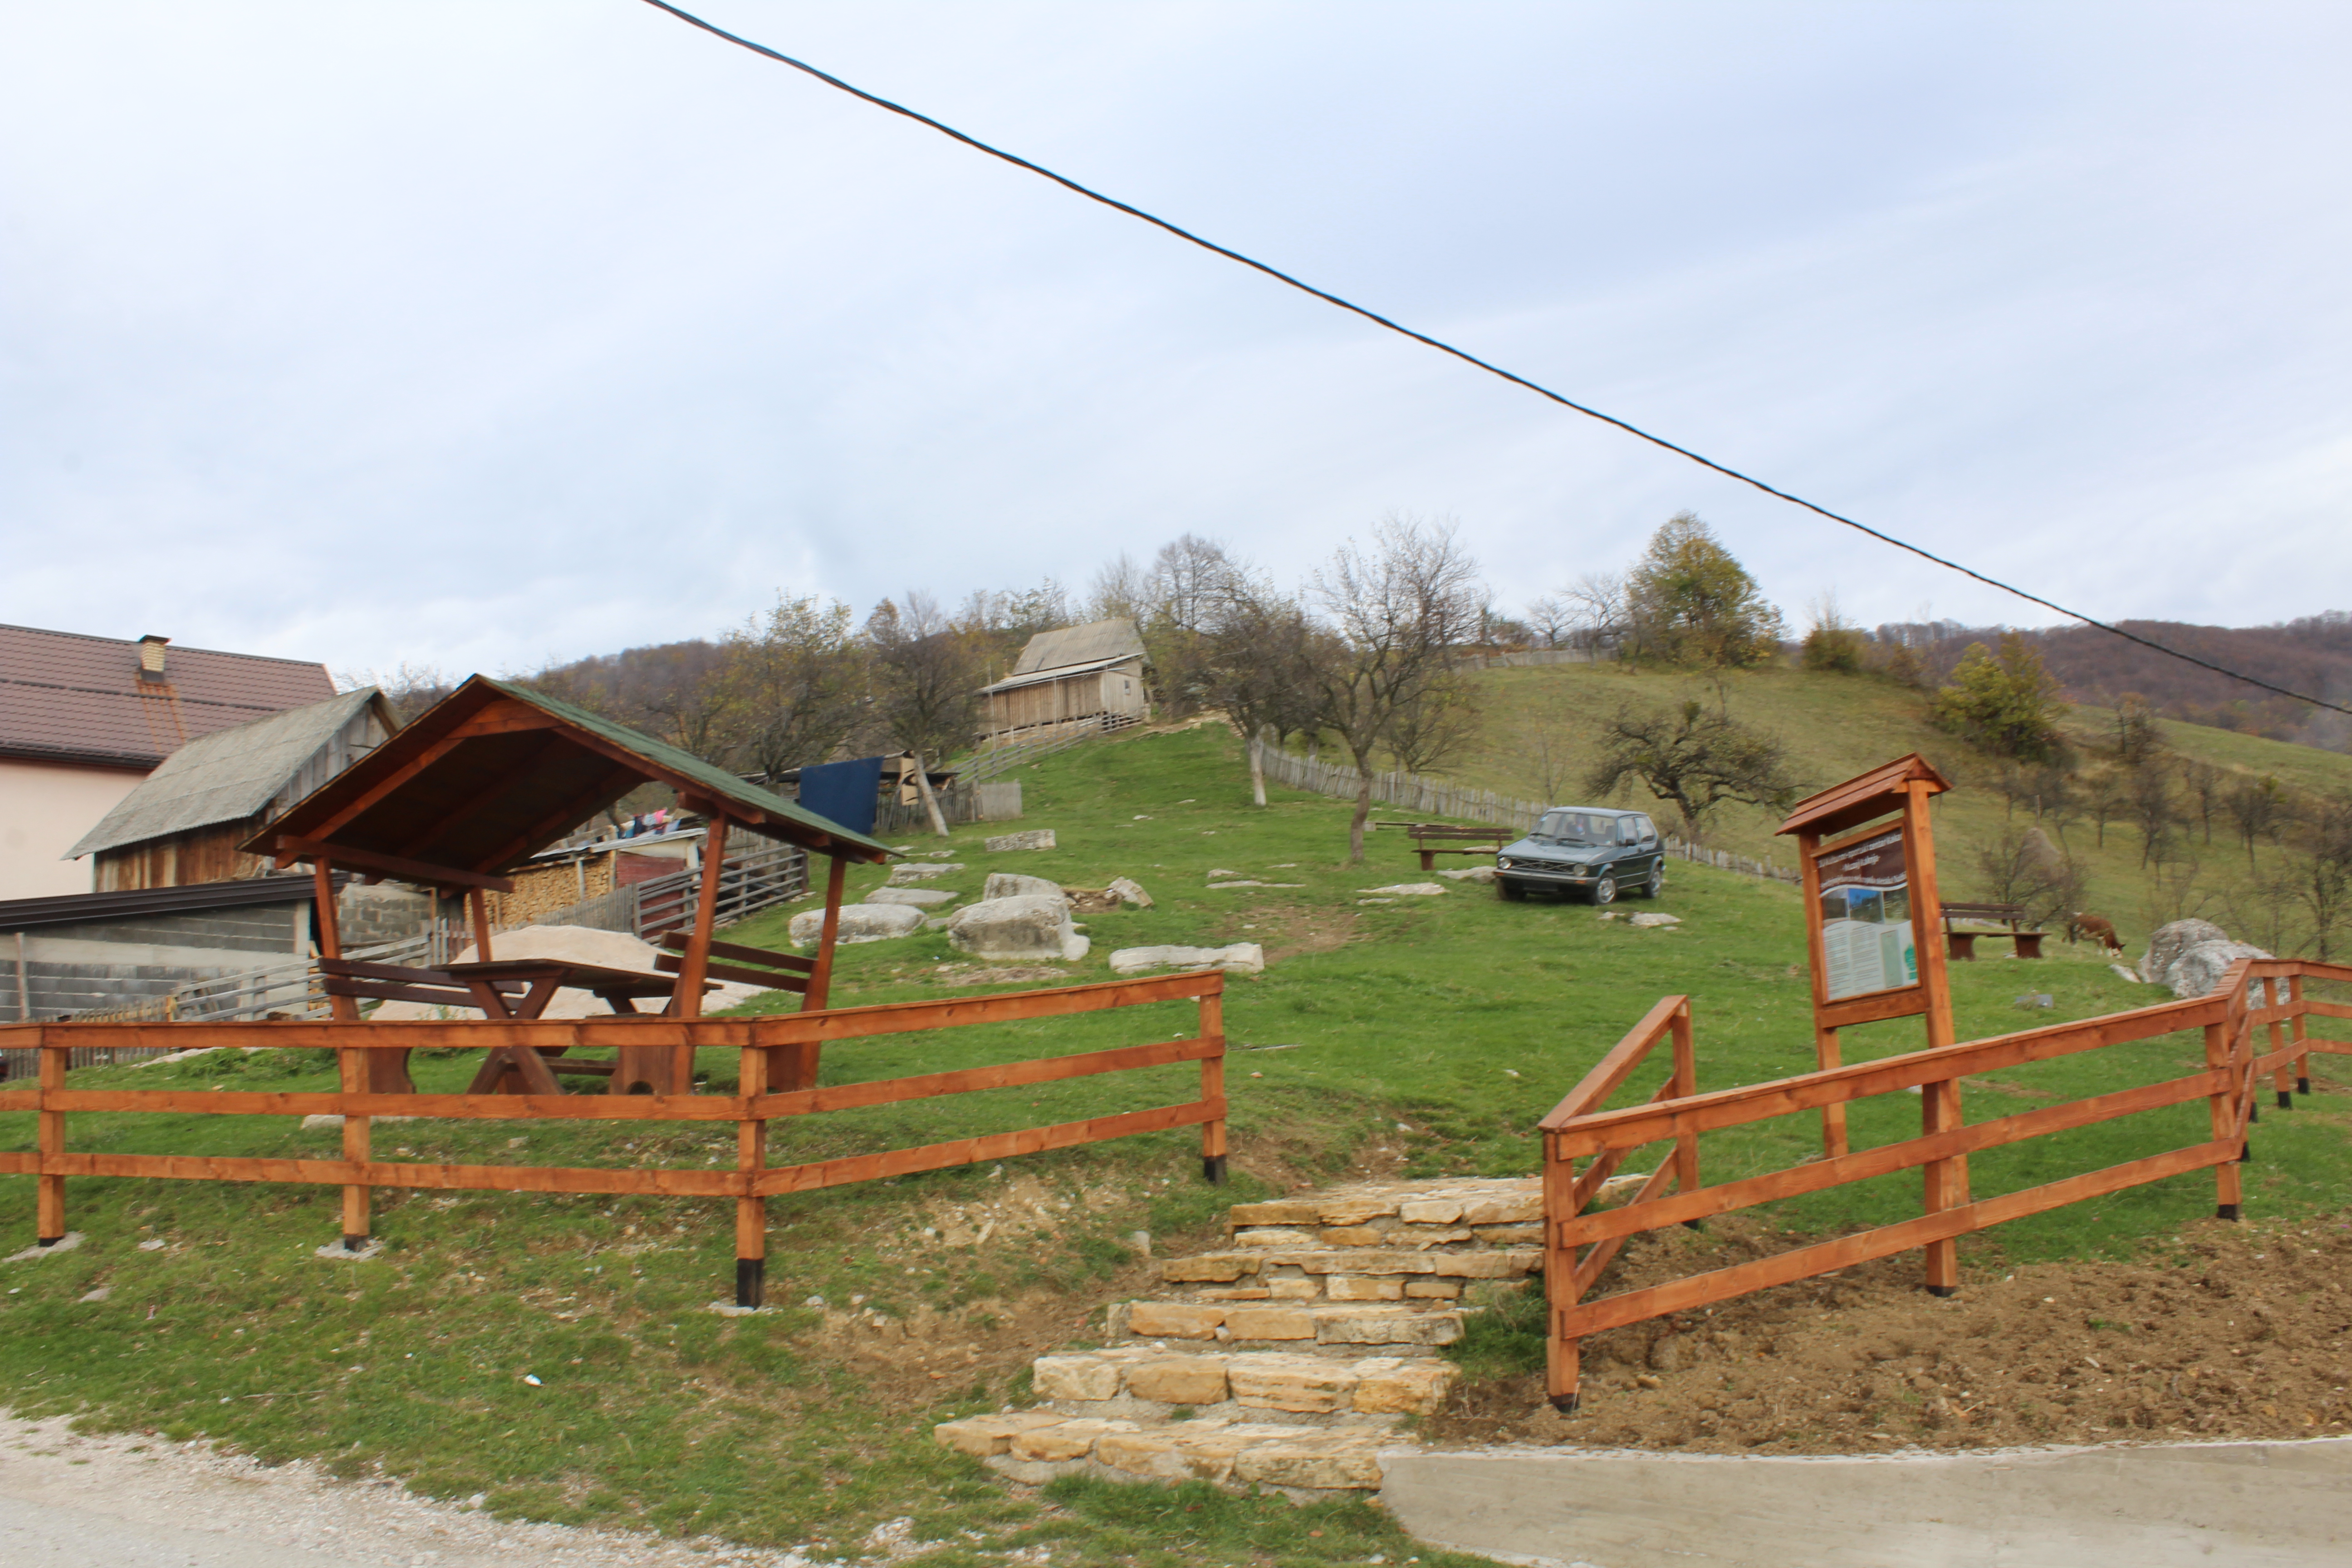 Projekat “Popis stećaka na području općine Kakanj” nastavljen danas u selu Slapnica, Bištrani i Nažbilj